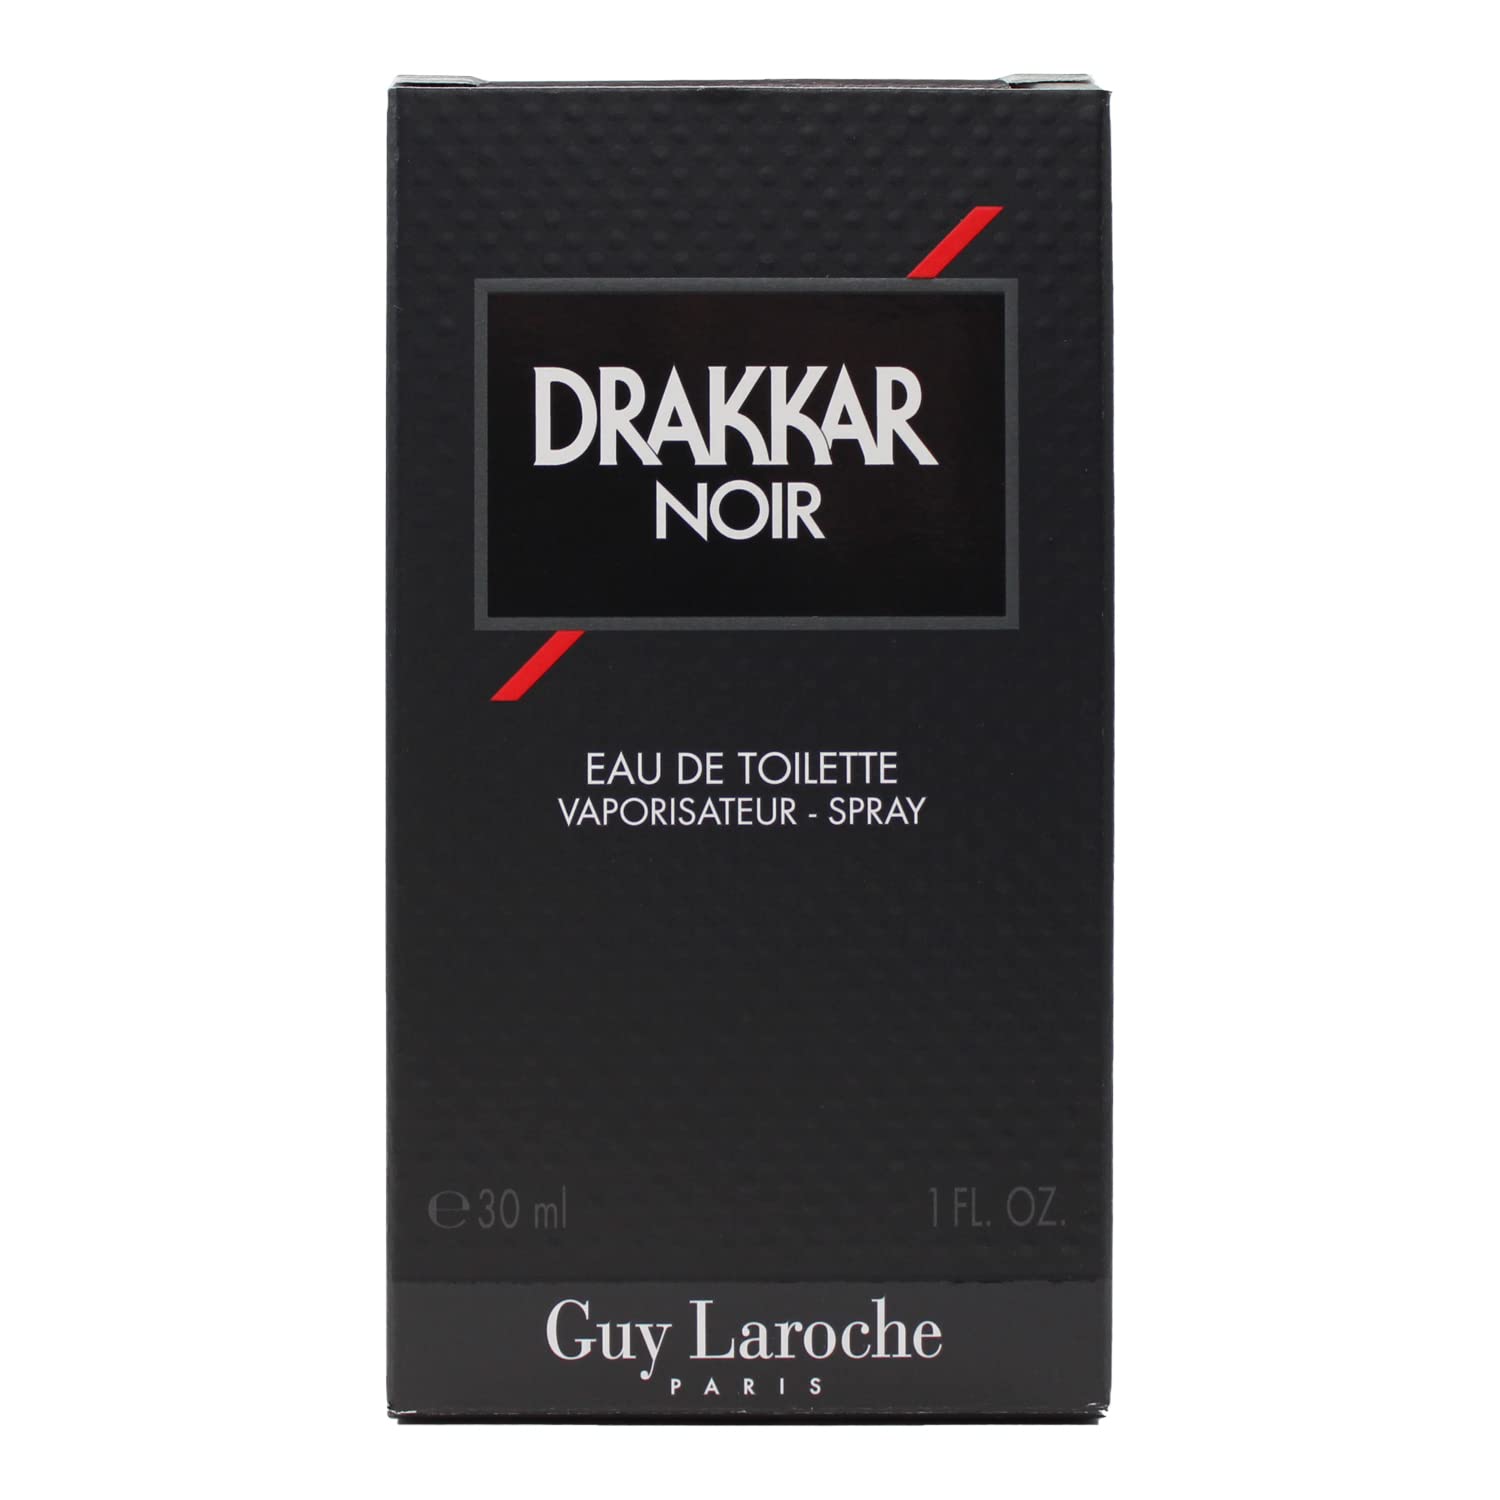 DRAKKAR NOIR by Guy Laroche 1.0 oz EDT Spray NEW in Box for Men